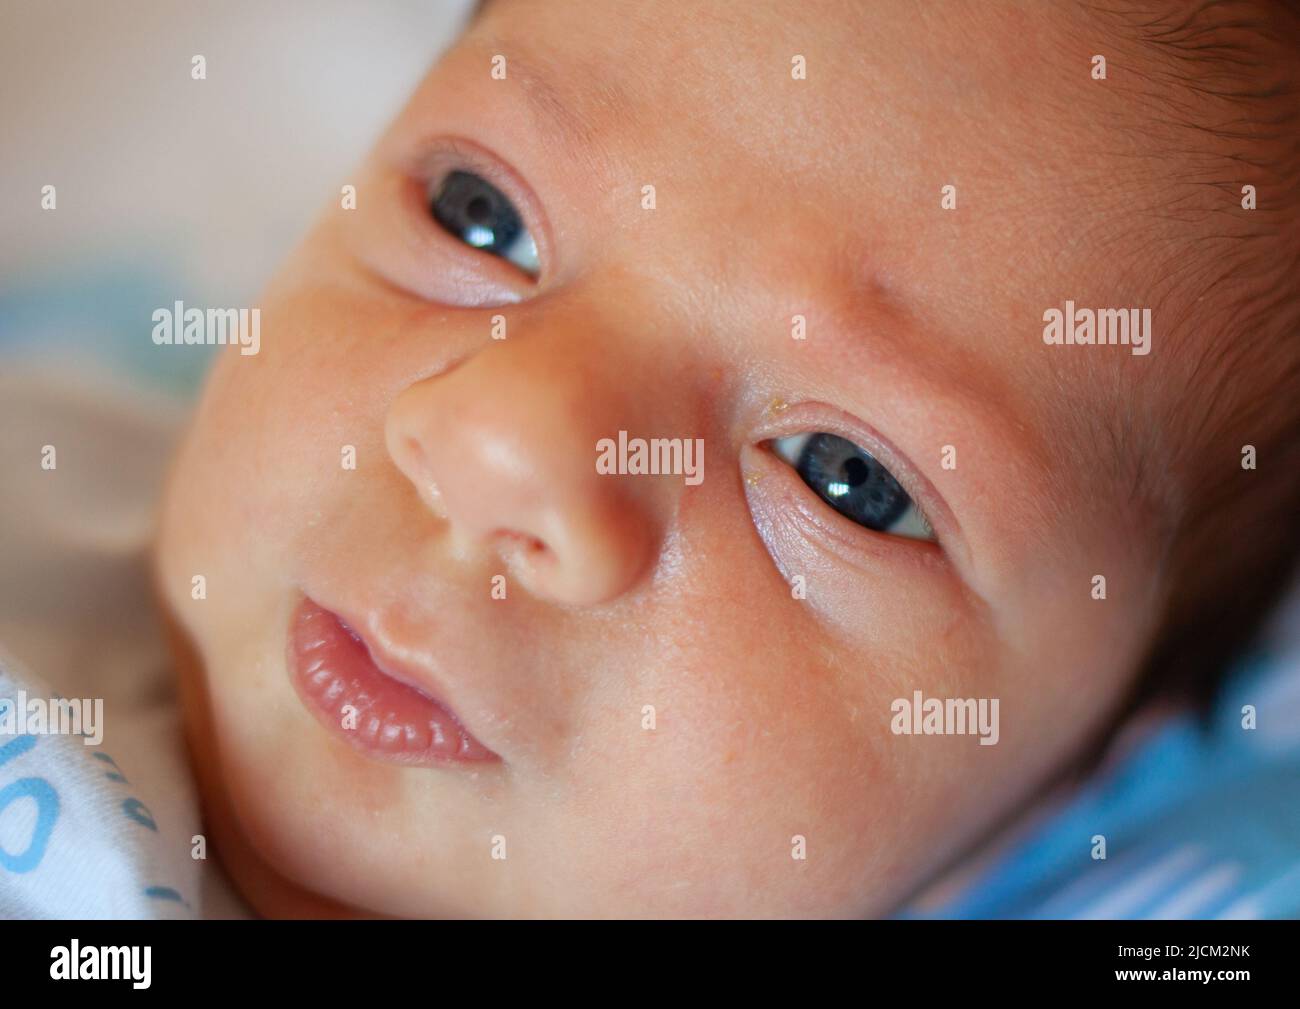 Detalle del ojo de un recién nacido de unos pocos días. Concepto médico sobre la vista de los bebés pediátricos. Foto de stock